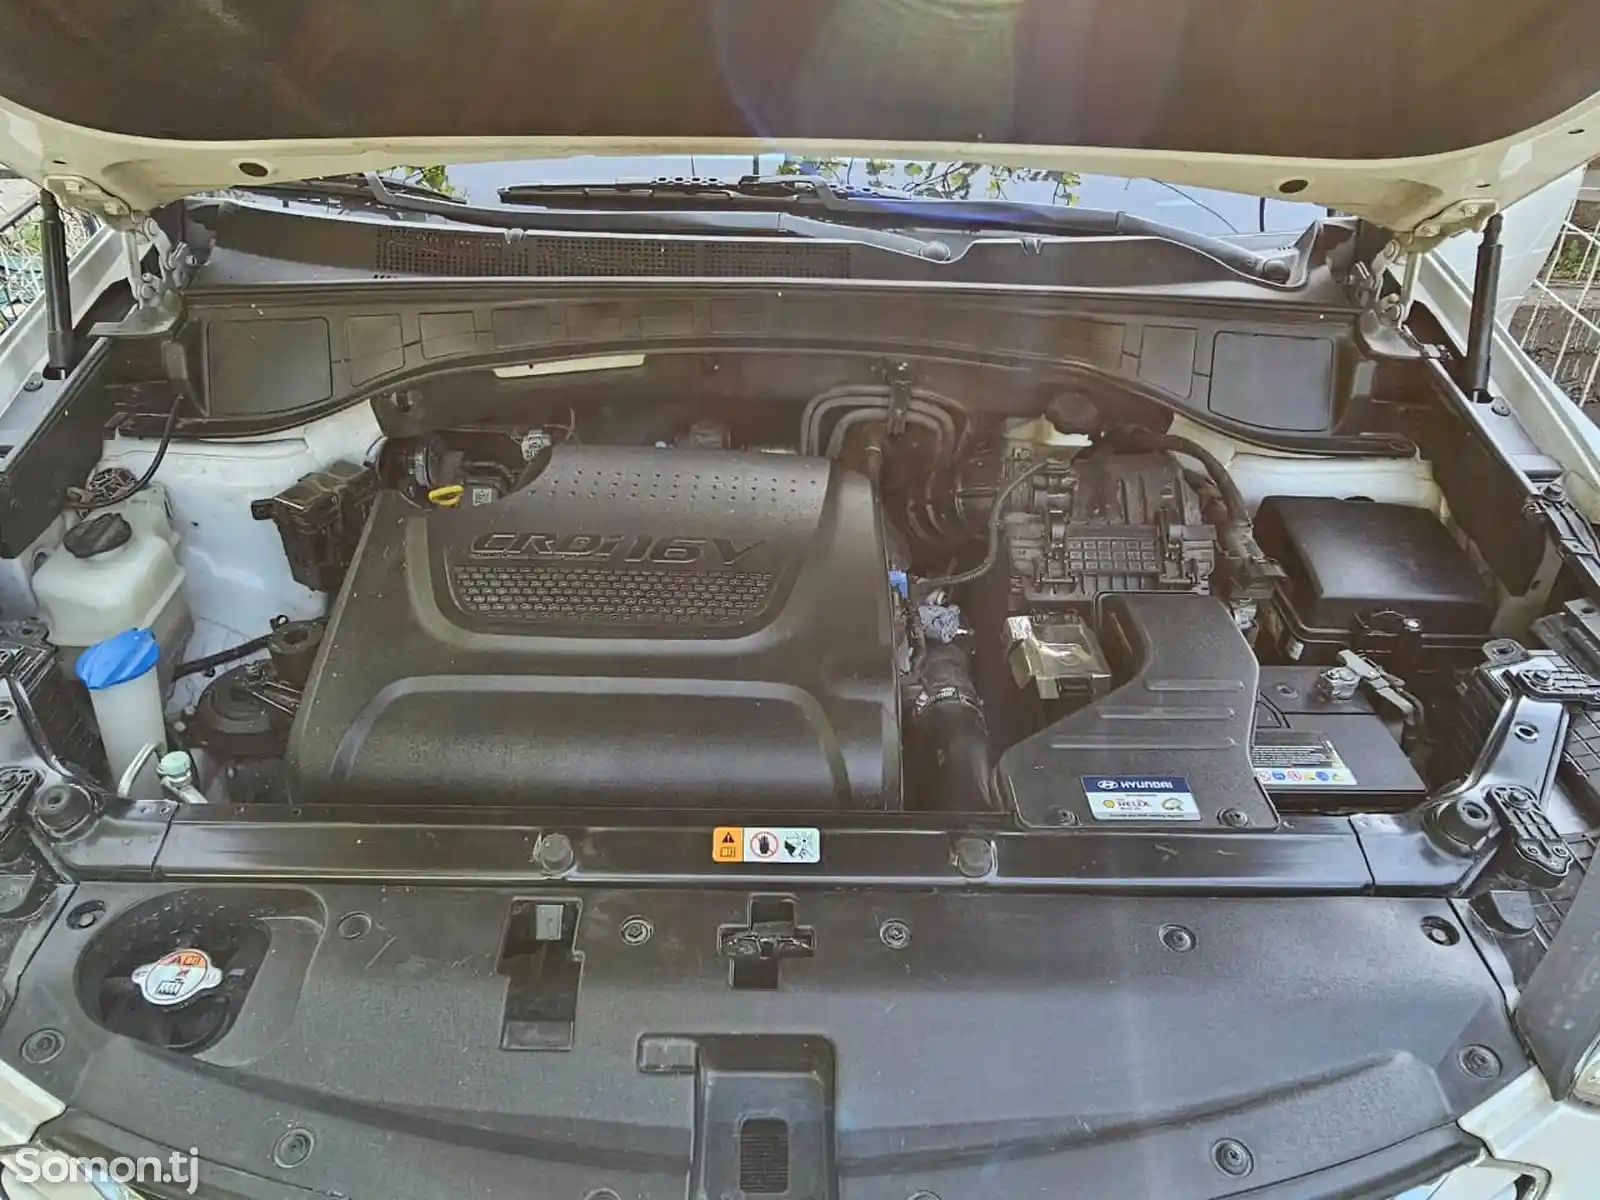 Hyundai Santa Fe, 2014-10